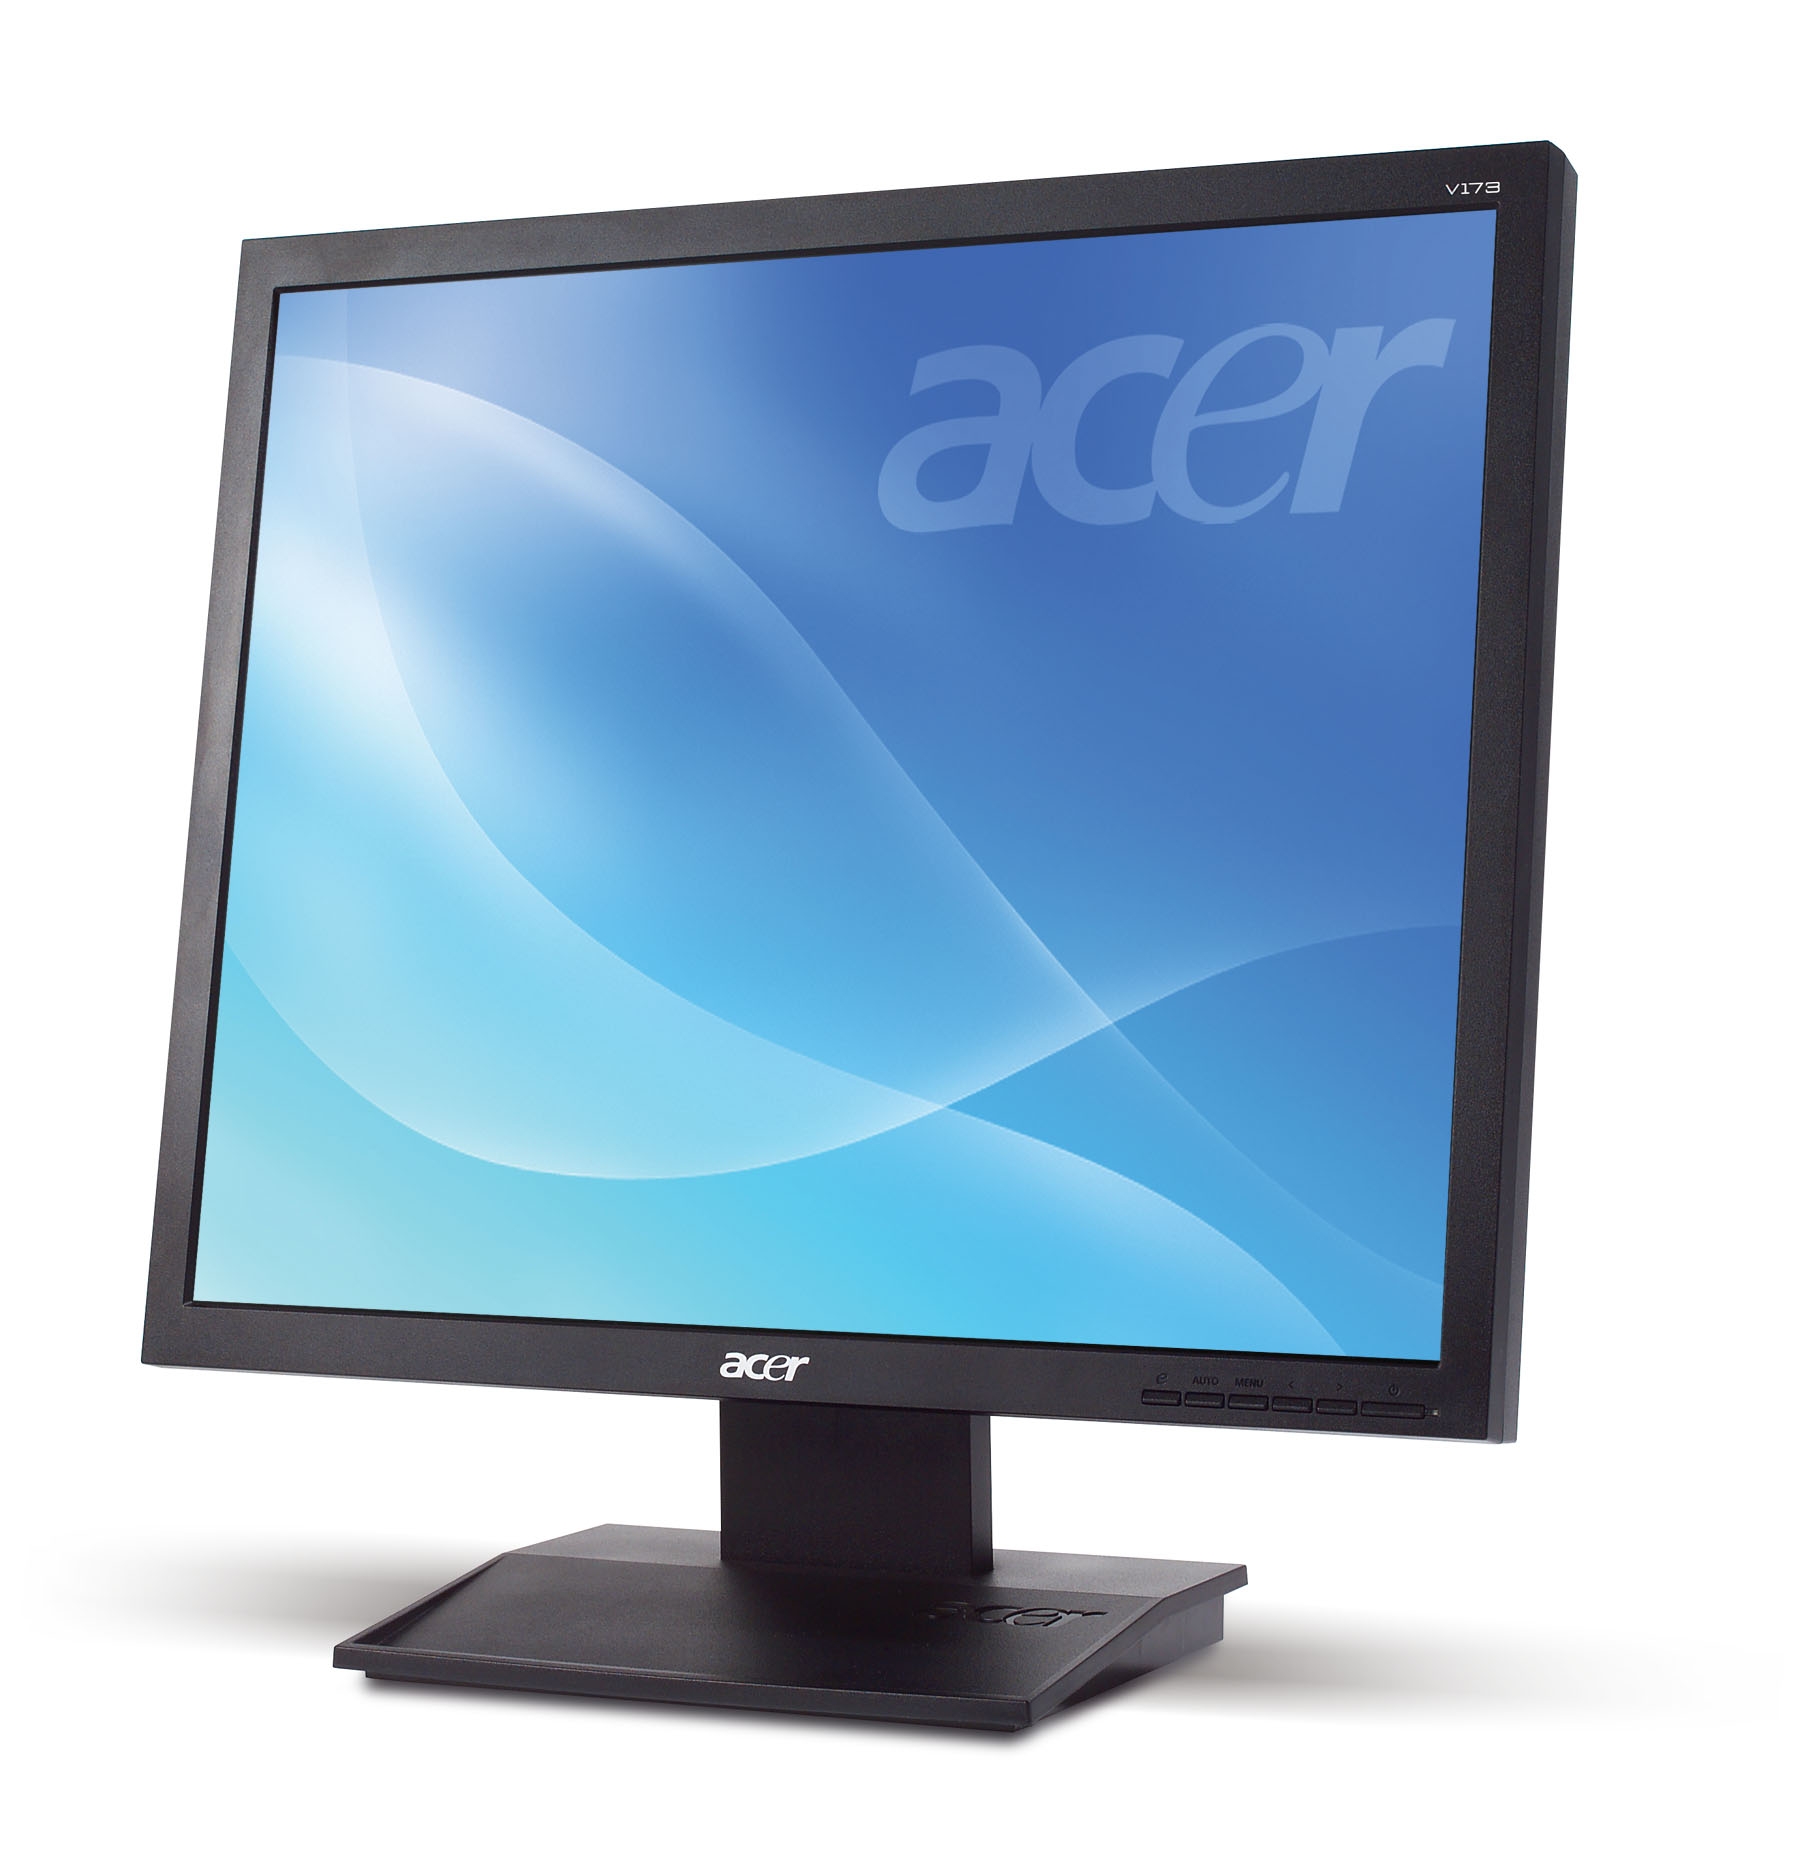 Acer V173-L